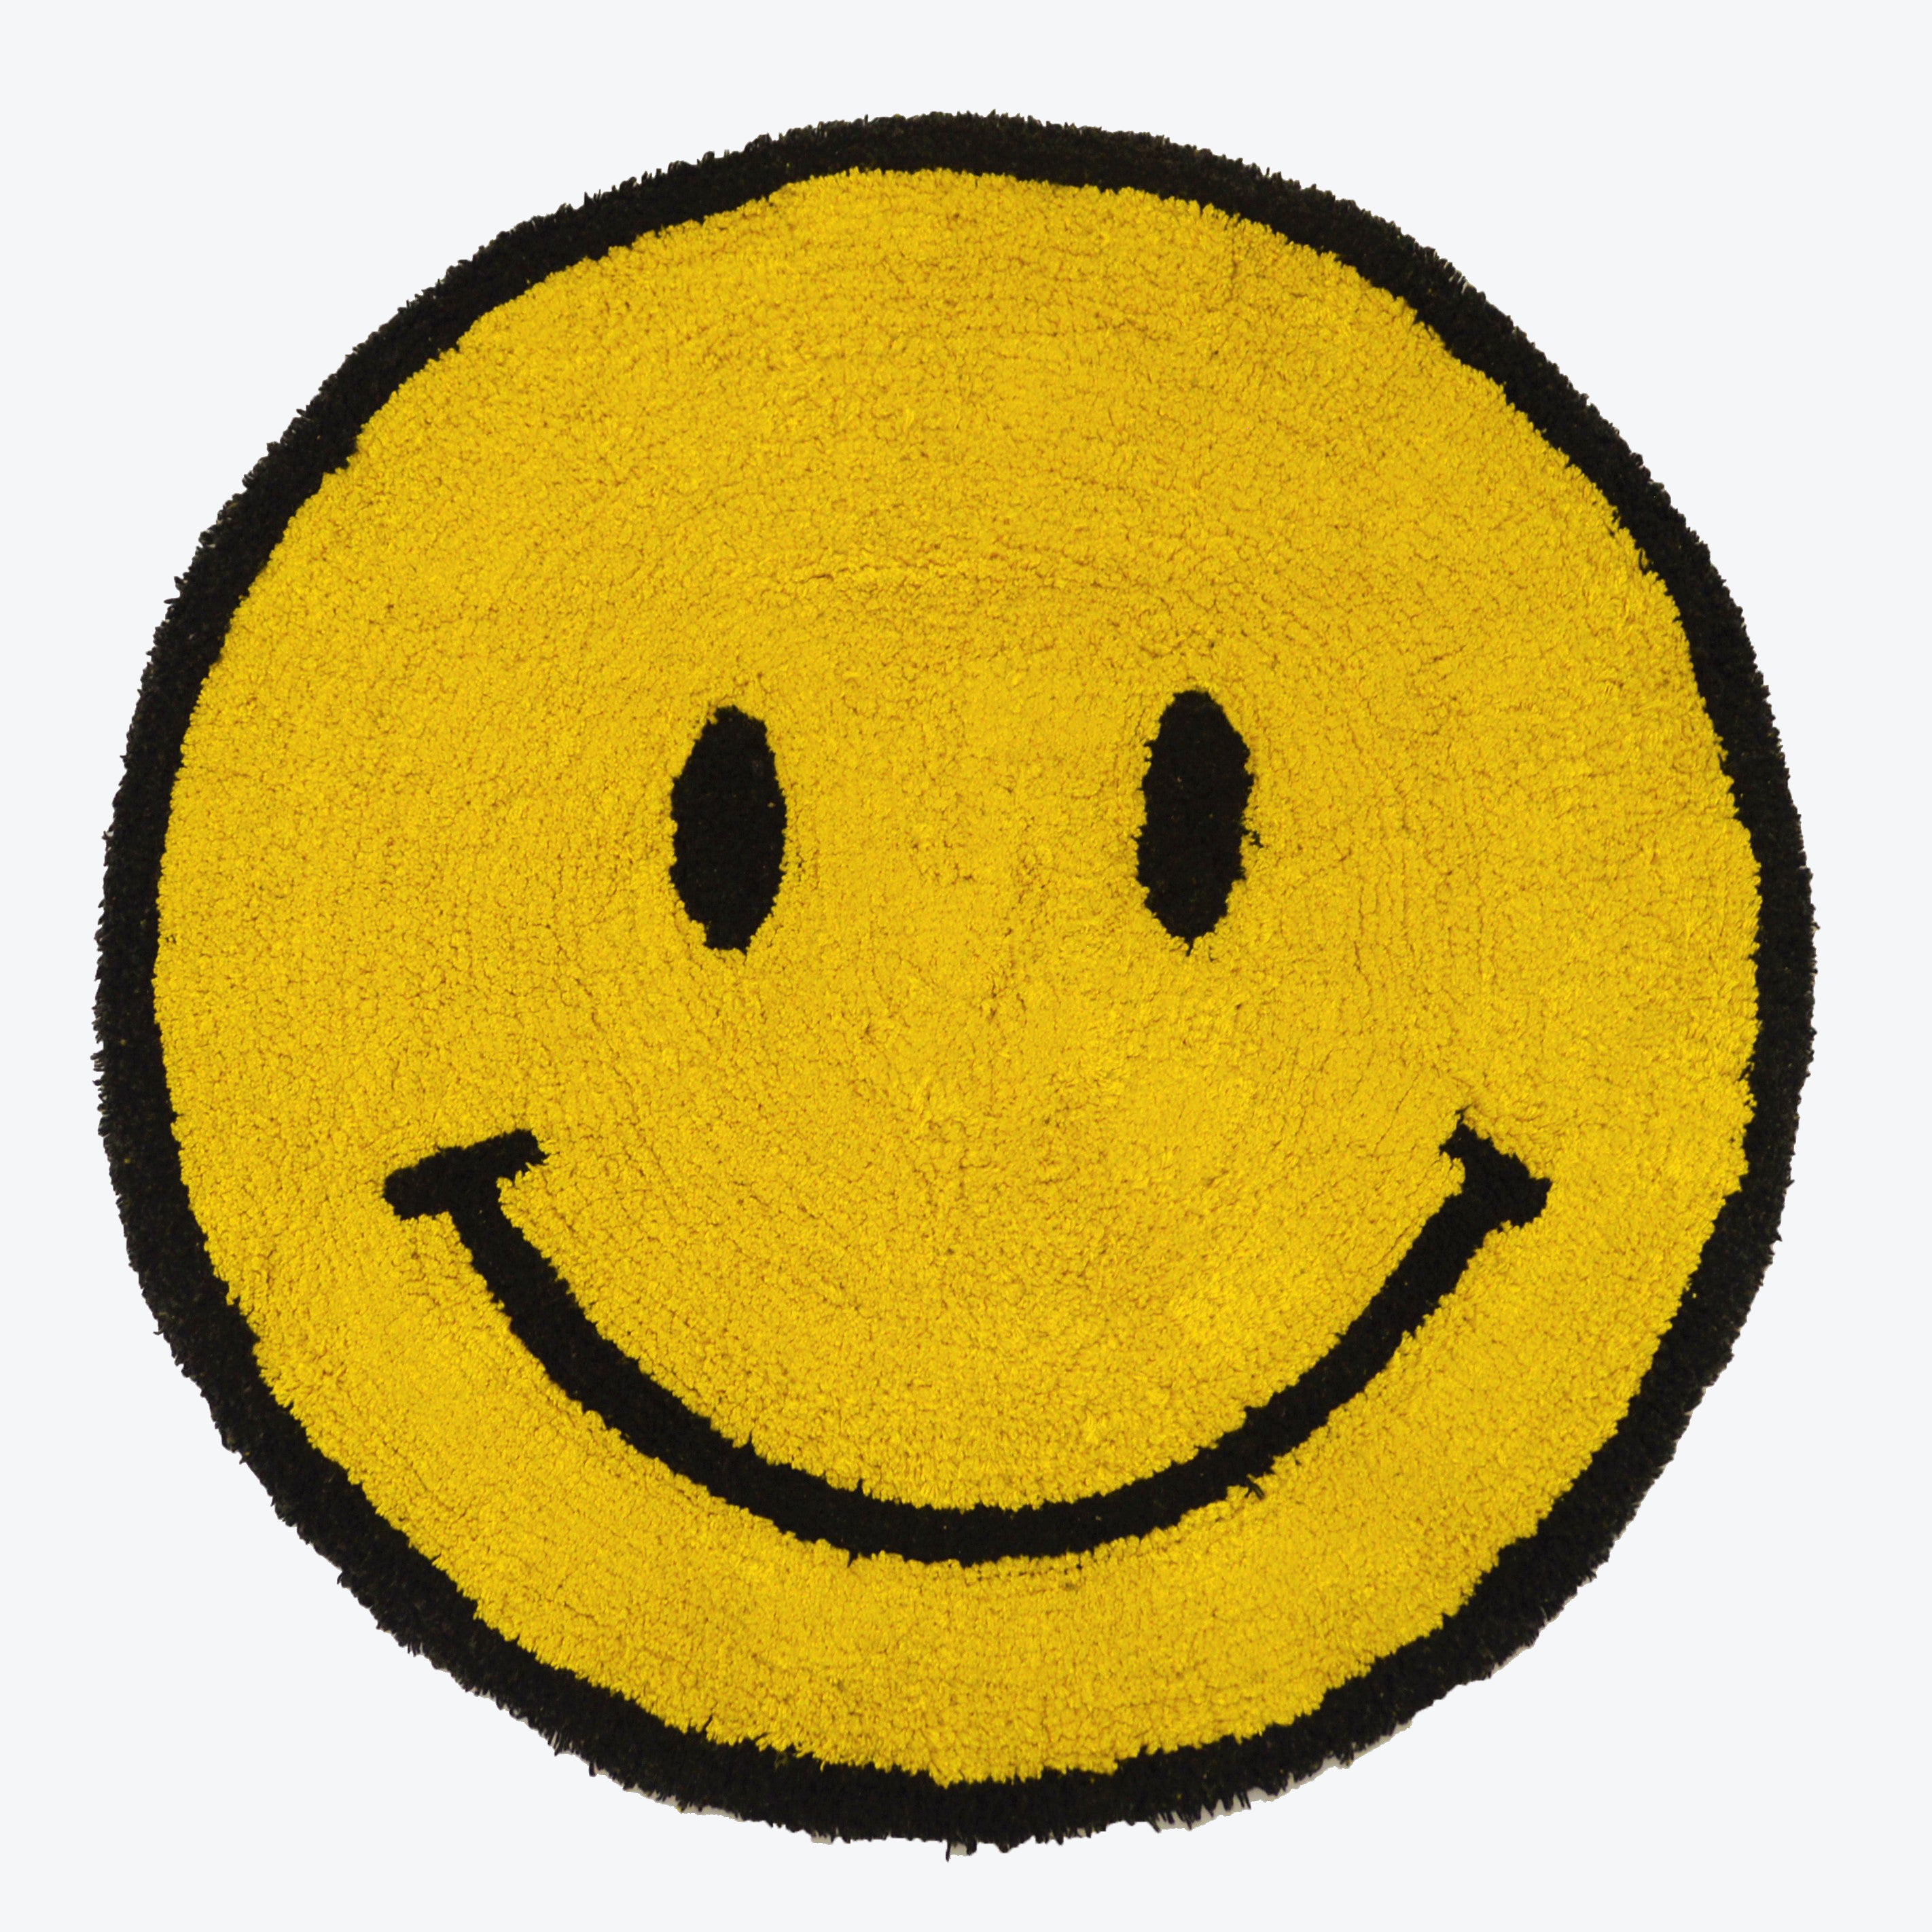 Smiley face rug - yellow happy emoji rug.